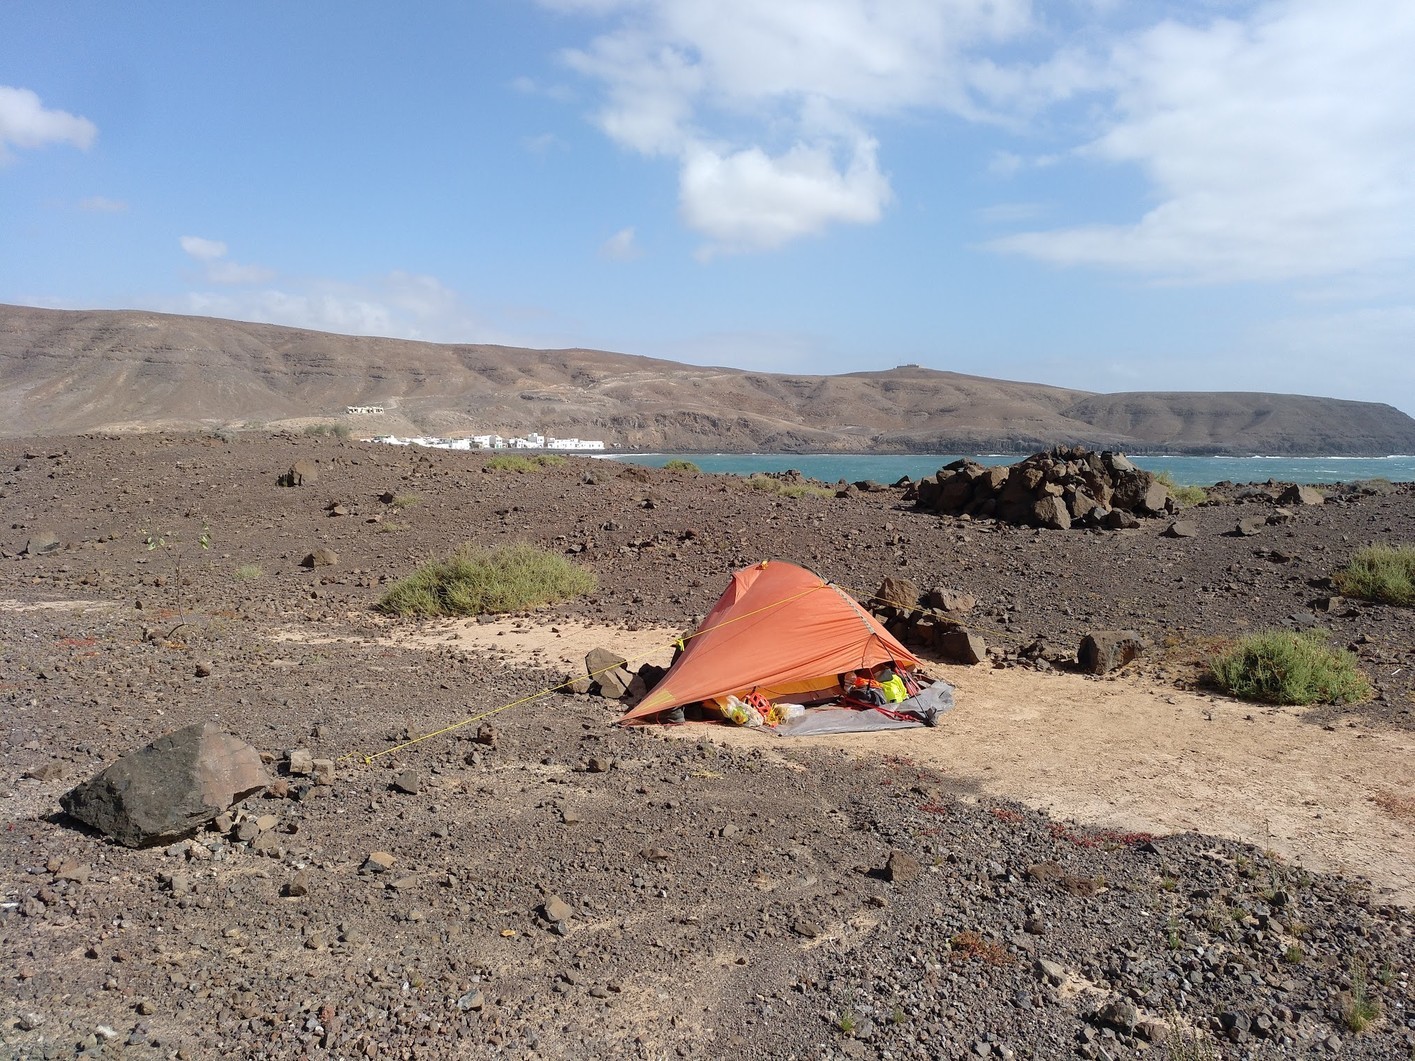 Se puede acampar en Fuerteventura pero hay zonas delimitadas para ello